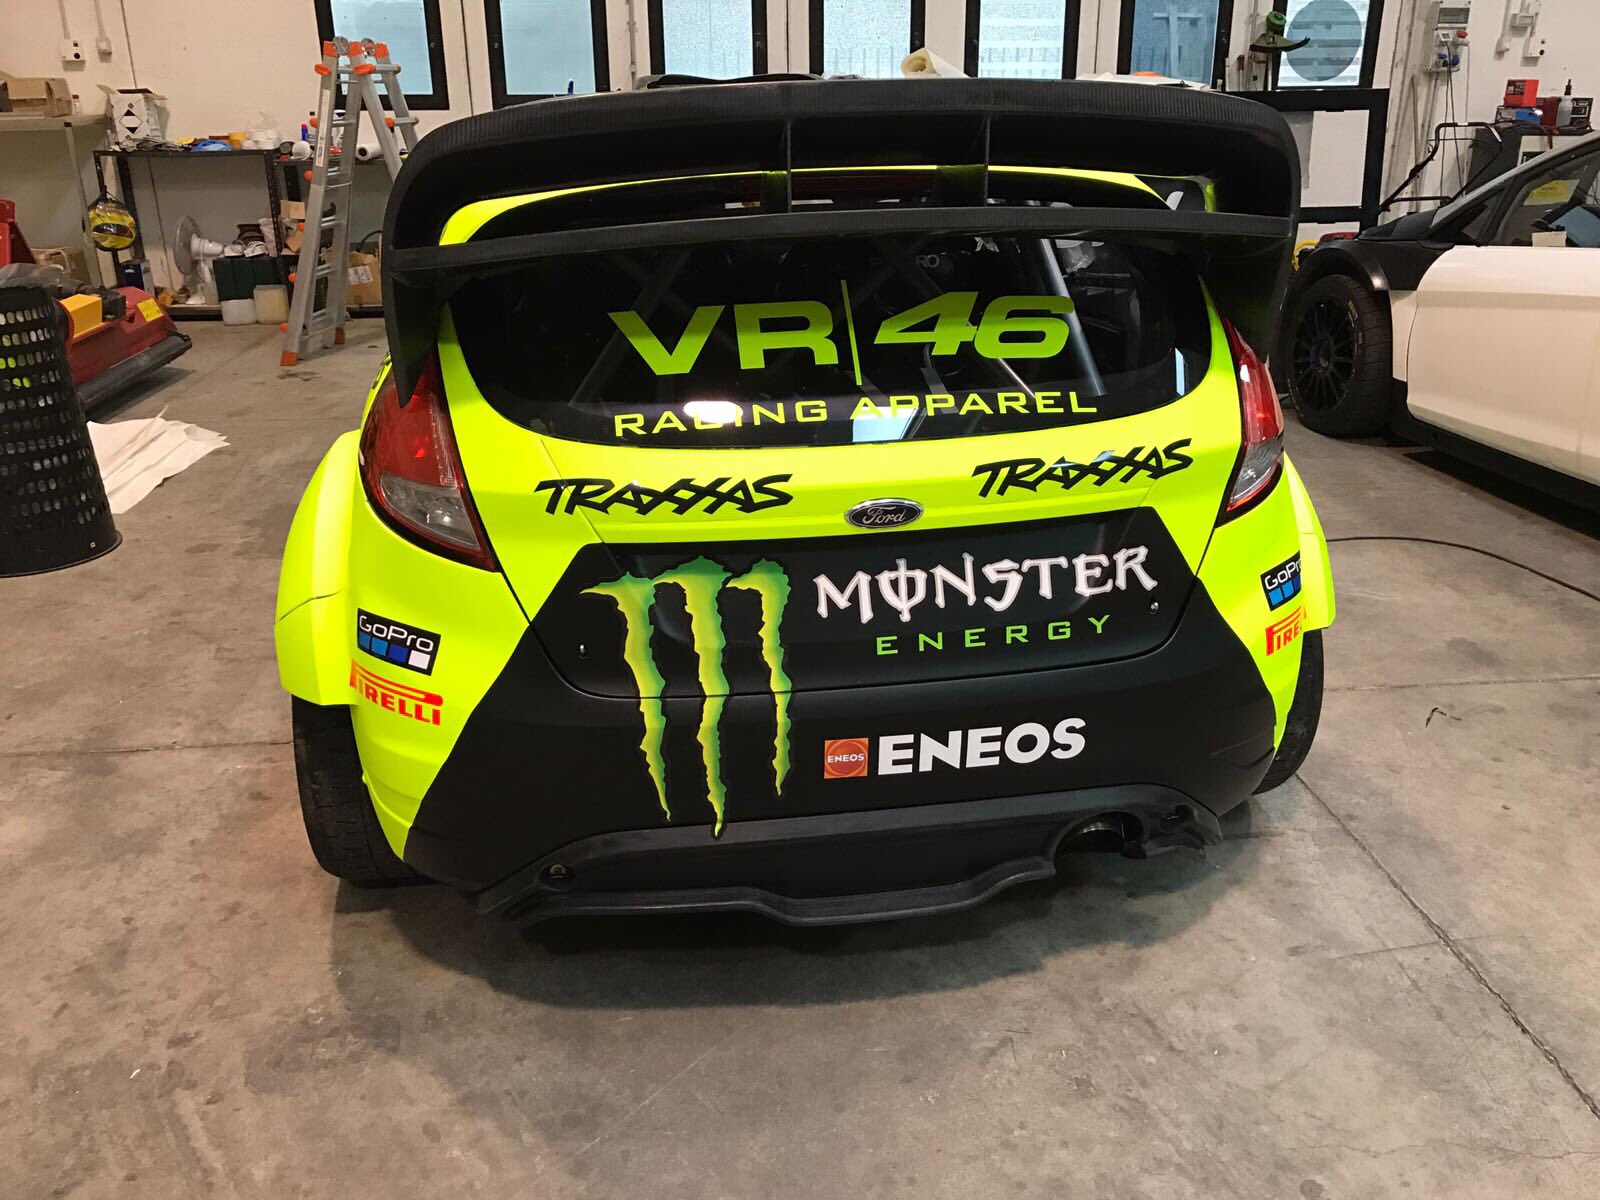 Inilah Mobil Yang Akan Rossi Pakai Berlaga Di Monza Rally Show